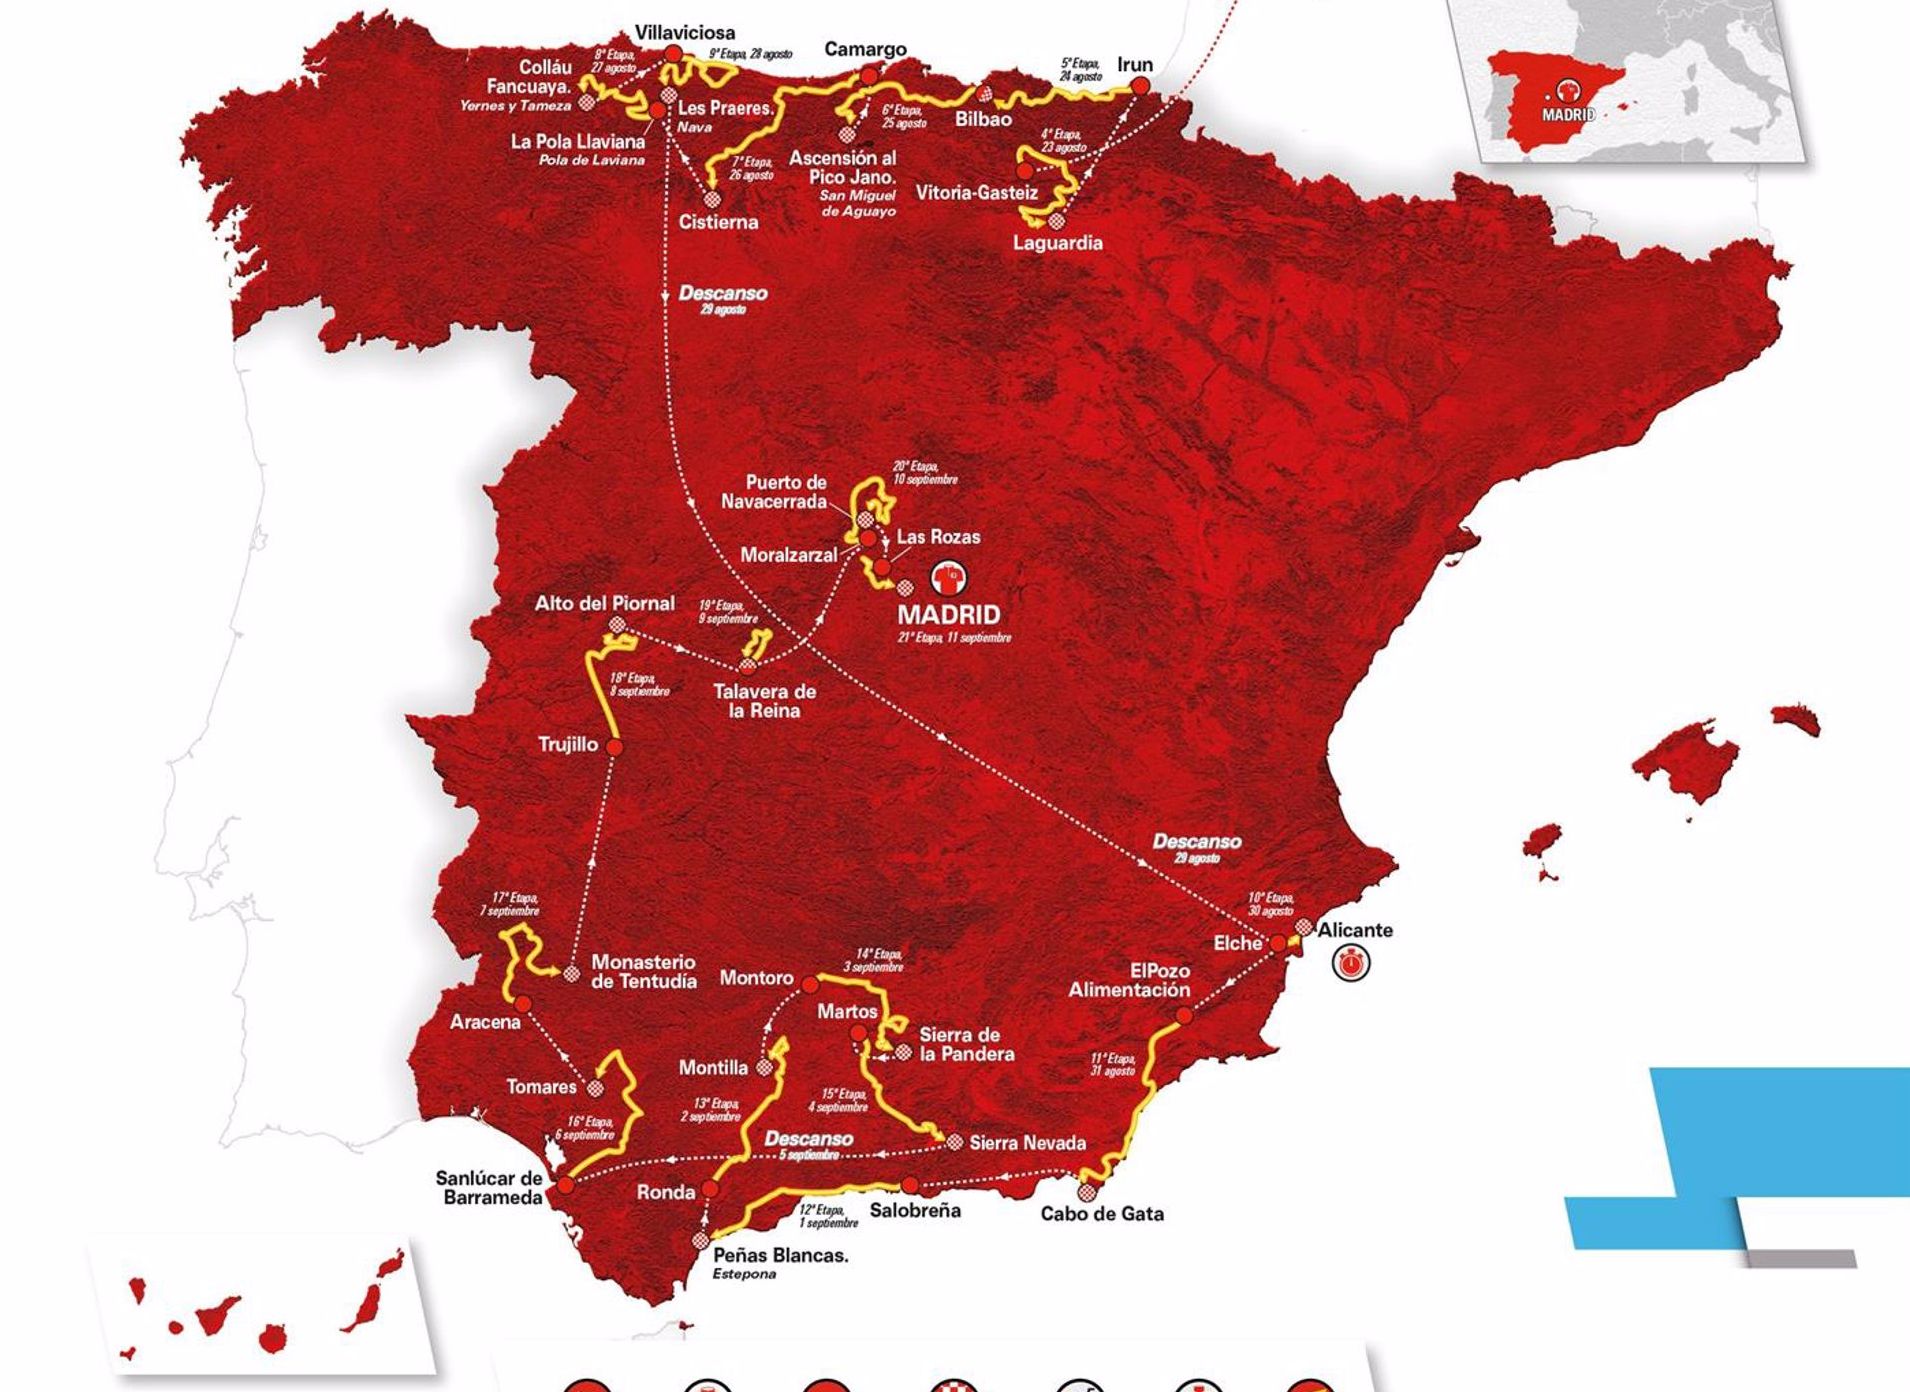 La Vuelta 22 apuesta por el norte y el sur de España y presenta nuevos retos